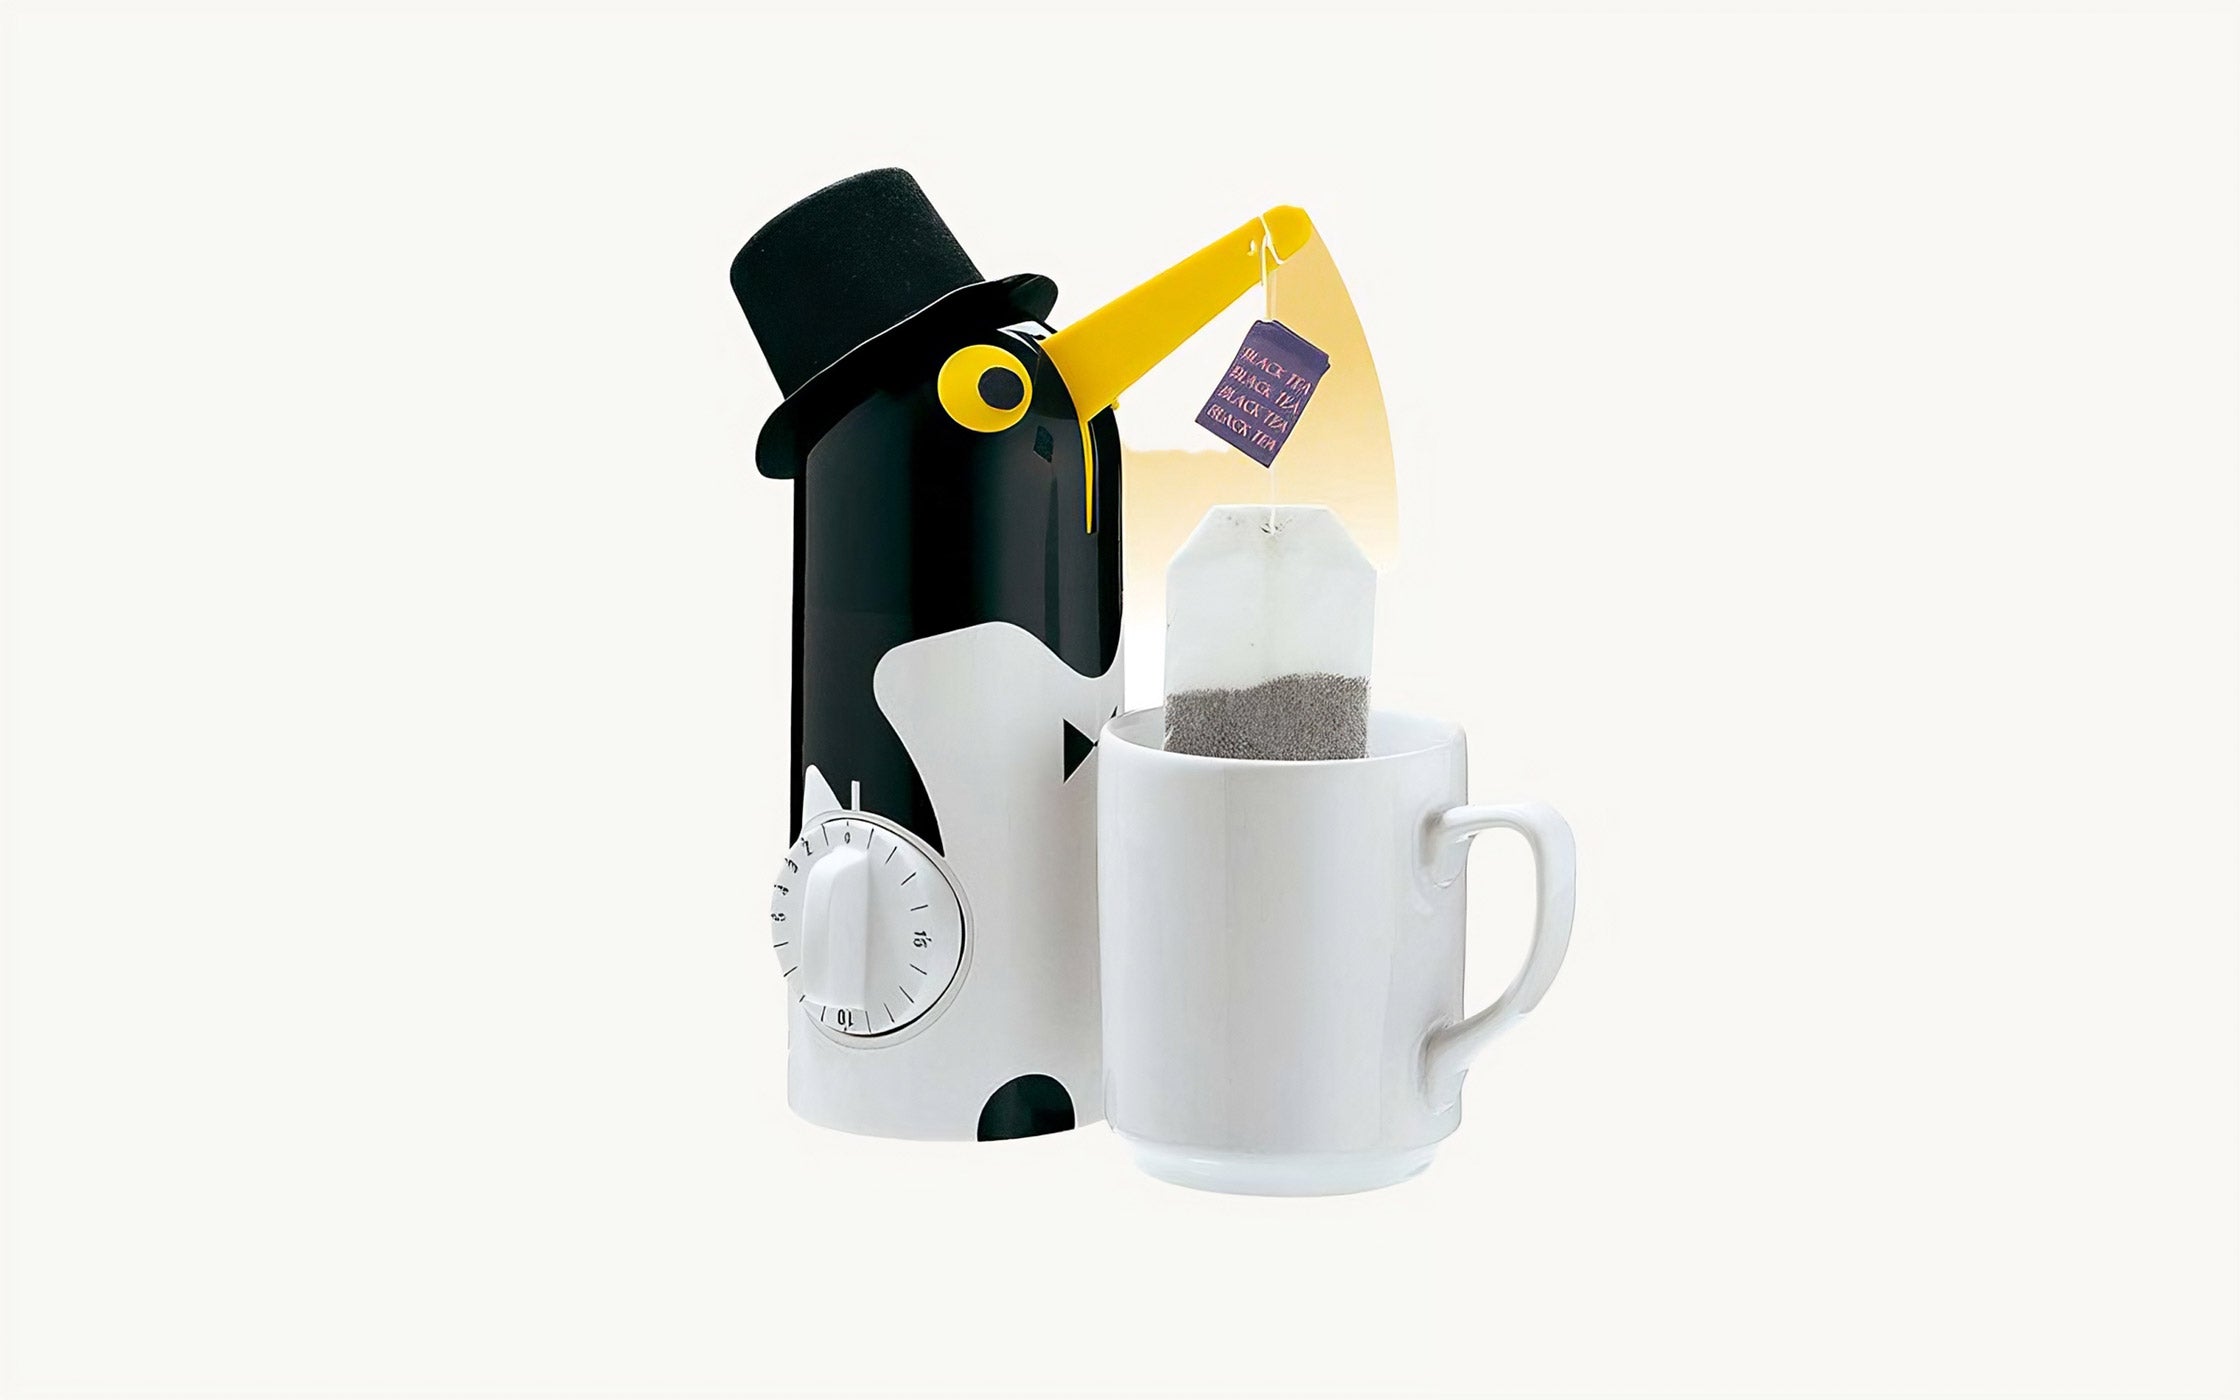 Küchenprofi Tee-Pingiun mit integriertem Timer und einer Teetasse mit Teebeutel